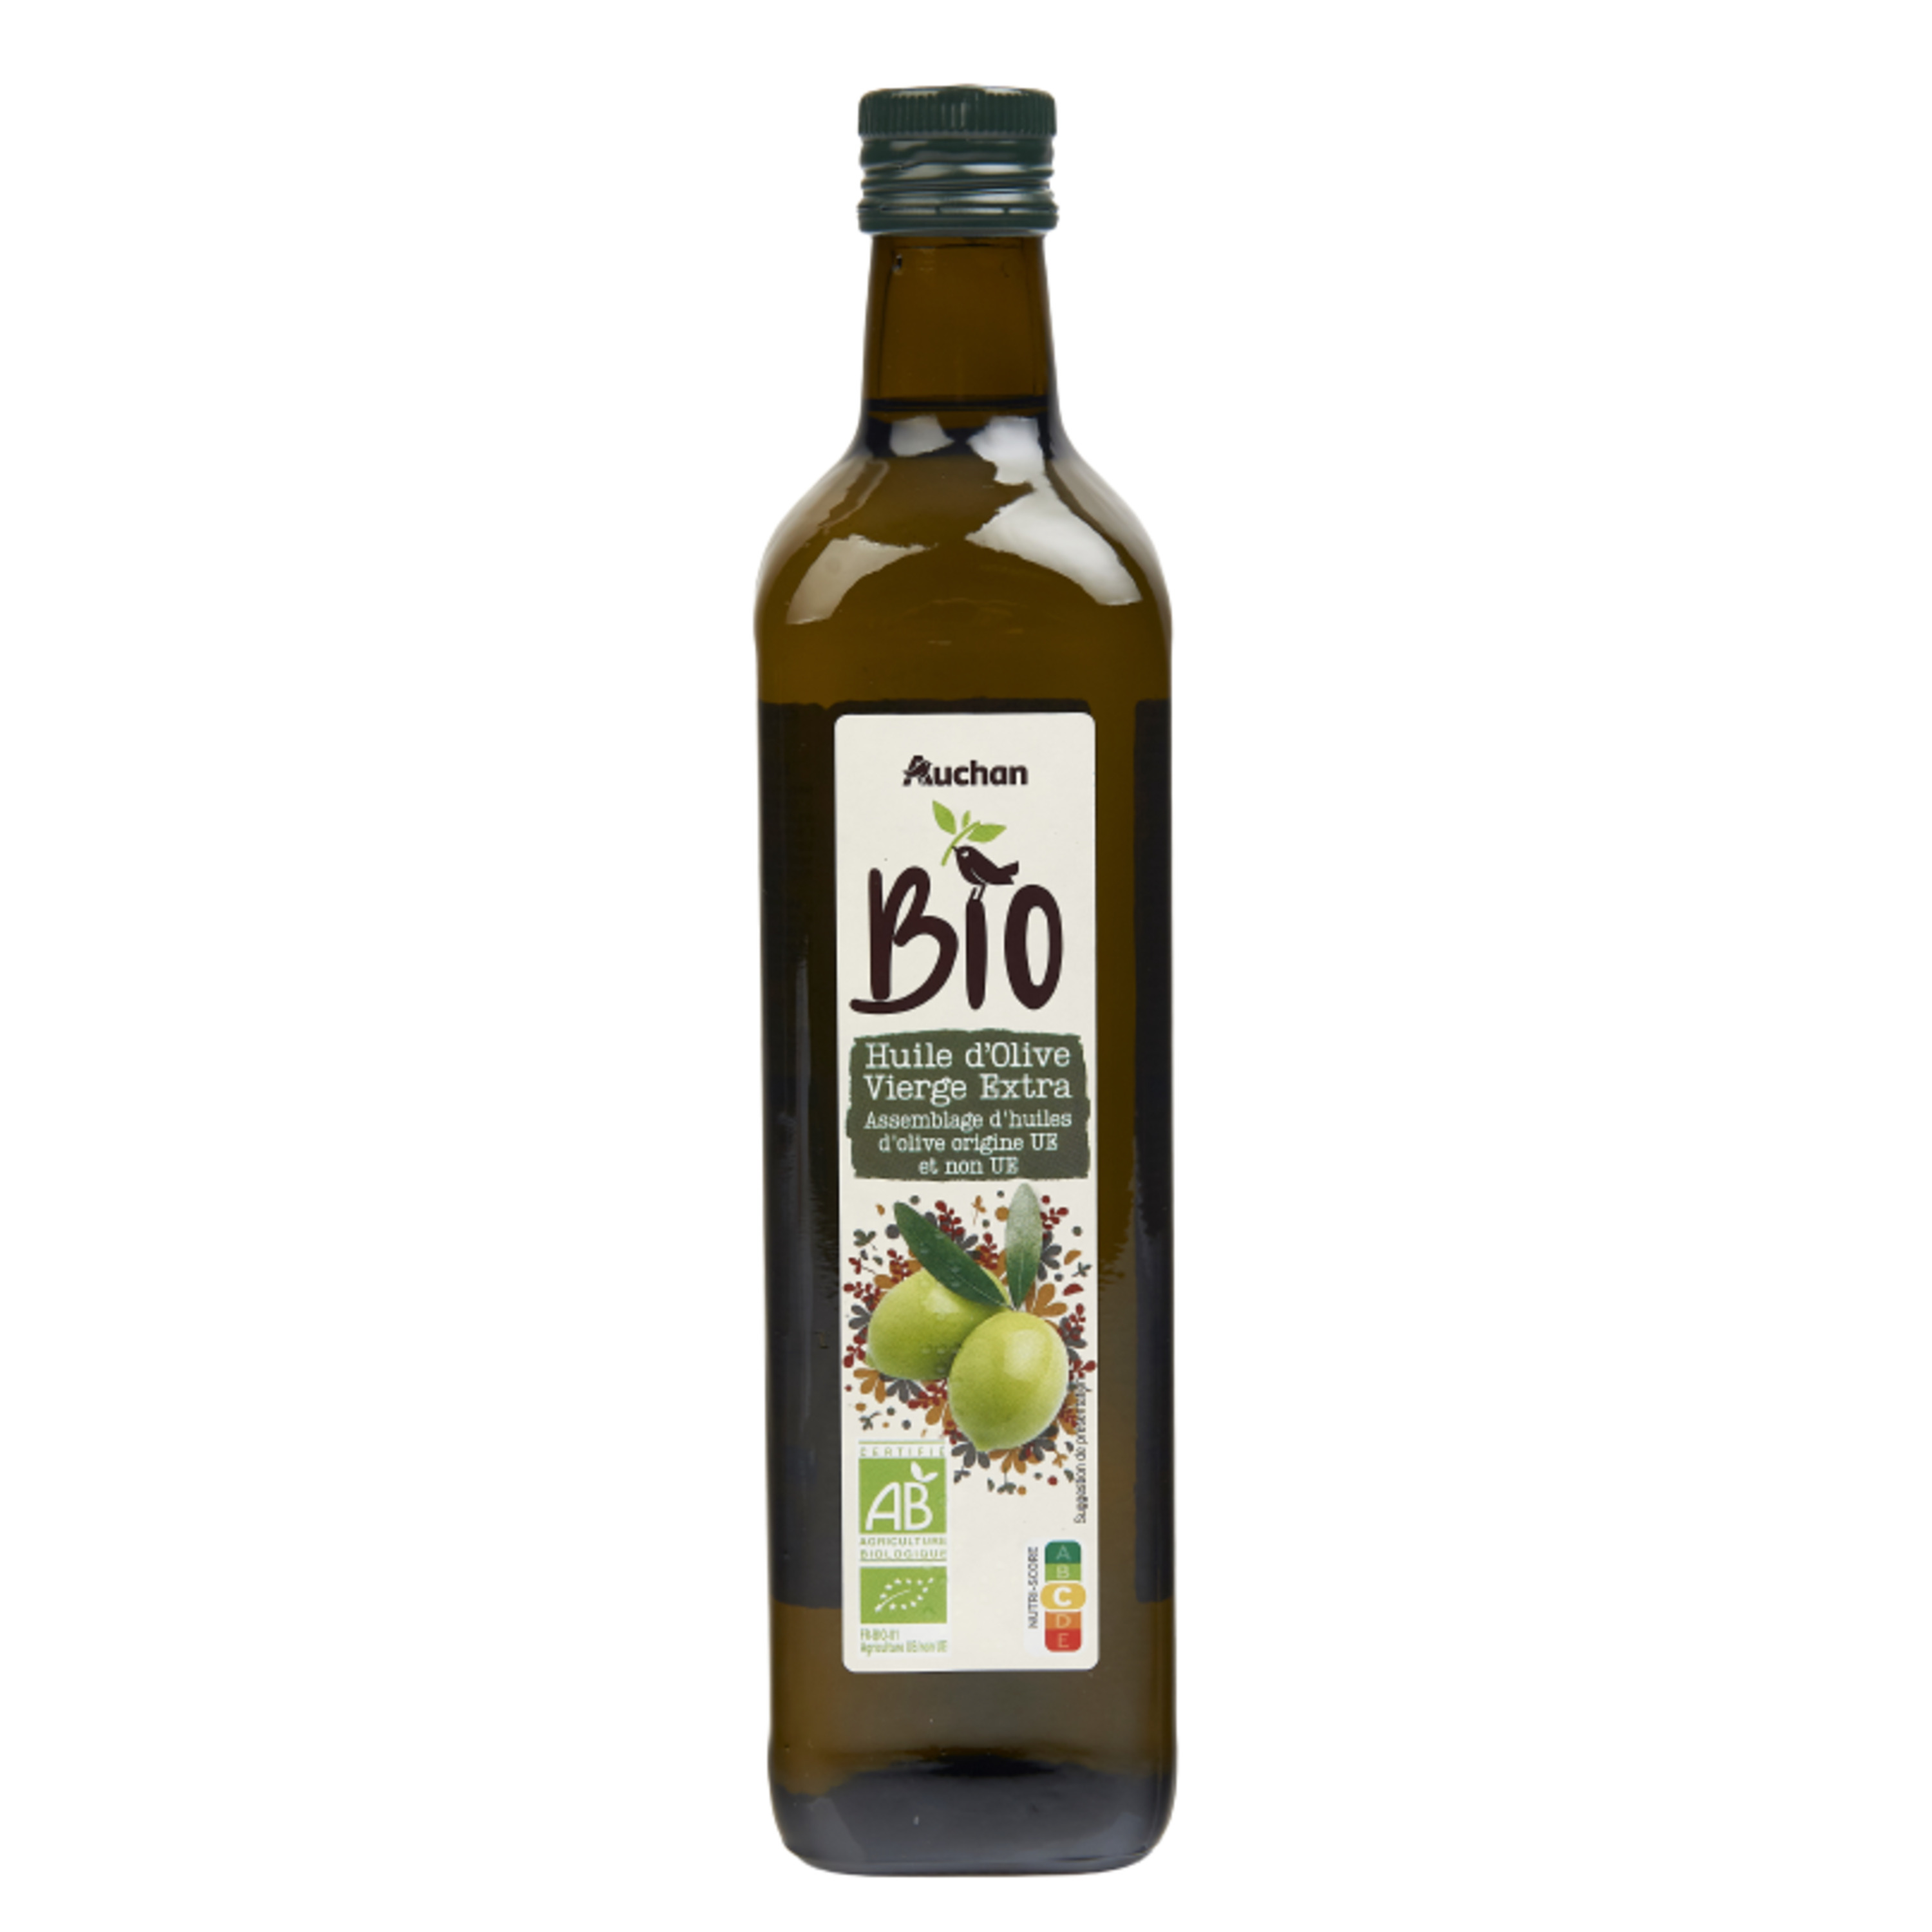 AUCHAN BIO CULTIVONS LE BON huile d'olive vierge extra origine